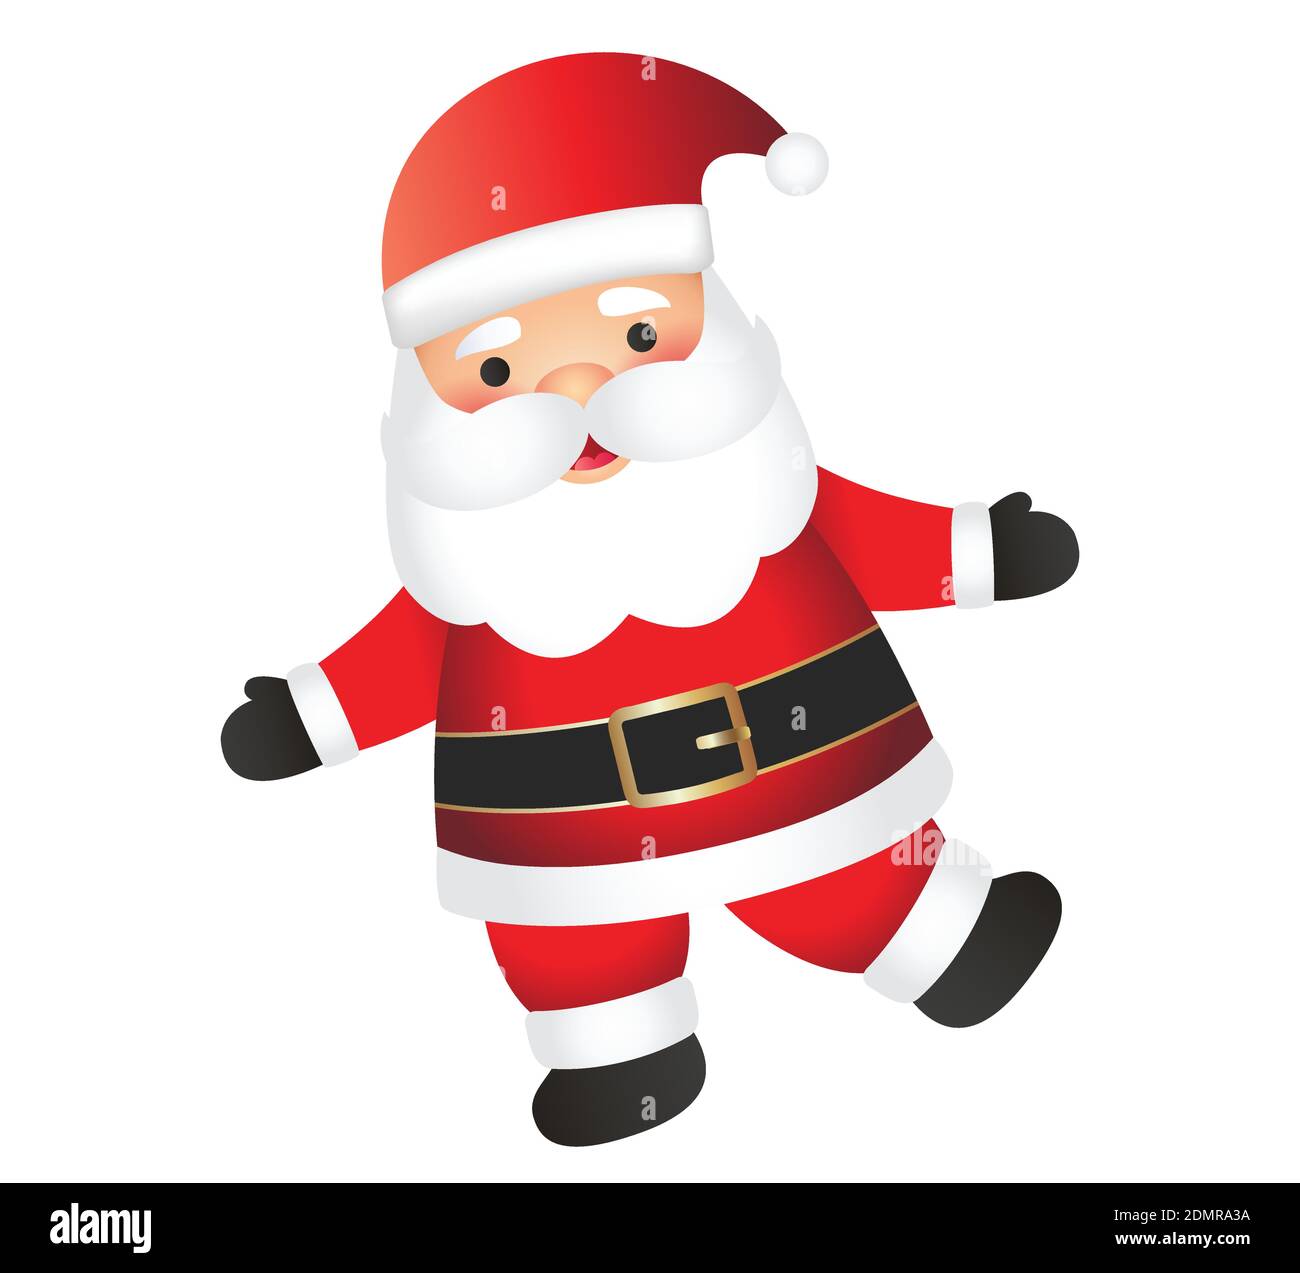 Santa Claus Cartoon Illustration isoliert auf weißem Hintergrund.  Weihnachtsmann Charakter winkt und Gruß auf einem Bein Stock-Vektorgrafik -  Alamy